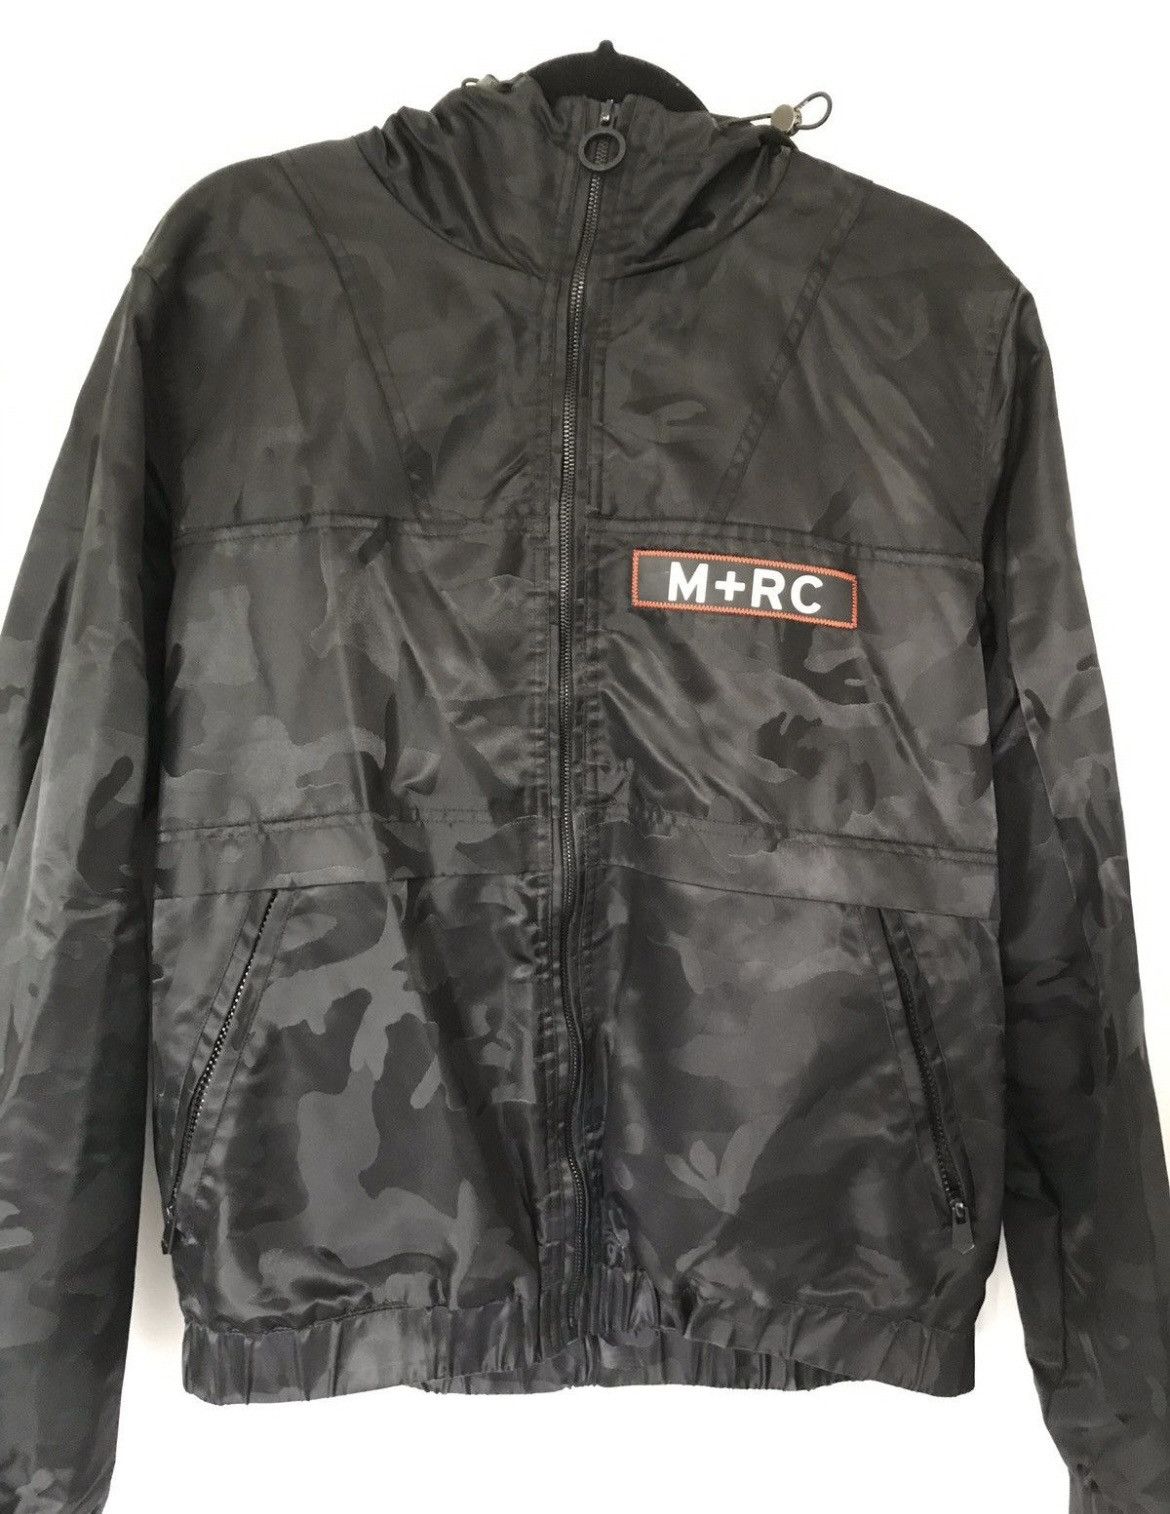 M+RC Noir Clothing for Men | Grailed